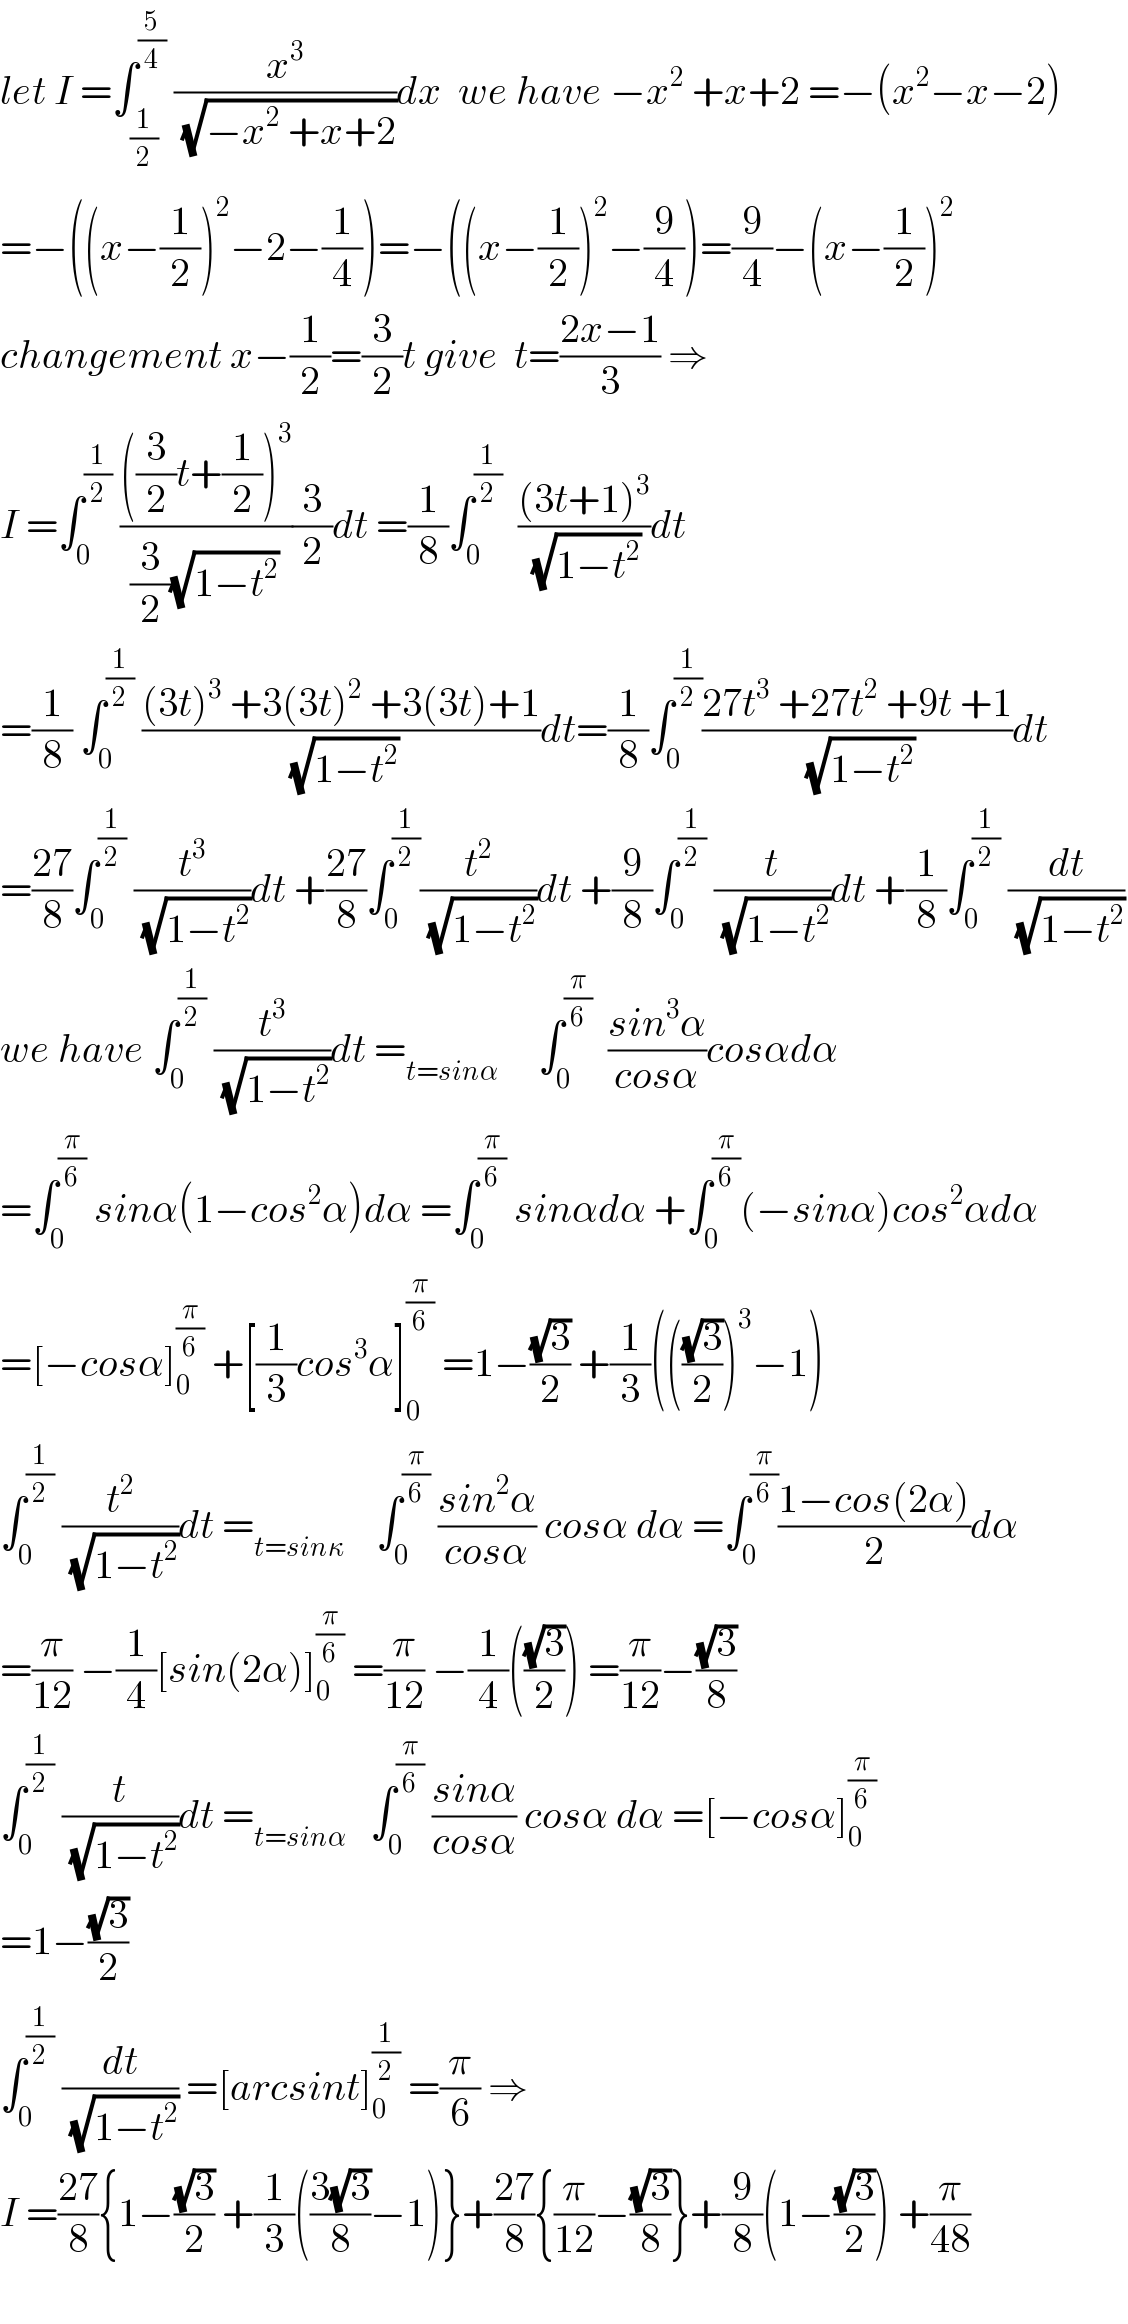 let I =∫_(1/2) ^(5/4)  (x^3 /(√(−x^2  +x+2)))dx  we have −x^2  +x+2 =−(x^2 −x−2)  =−((x−(1/2))^2 −2−(1/4))=−((x−(1/2))^2 −(9/4))=(9/4)−(x−(1/2))^2   changement x−(1/2)=(3/2)t give  t=((2x−1)/3) ⇒  I =∫_0 ^(1/2)  ((((3/2)t+(1/2))^3 )/((3/2)(√(1−t^2 ))))(3/2)dt =(1/8)∫_0 ^(1/2)   (((3t+1)^3 )/(√(1−t^2 )))dt  =(1/8) ∫_0 ^(1/2)  (((3t)^3  +3(3t)^2  +3(3t)+1)/(√(1−t^2 )))dt=(1/8)∫_0 ^(1/2) ((27t^3  +27t^2  +9t +1)/(√(1−t^2 )))dt  =((27)/8)∫_0 ^(1/2)  (t^3 /(√(1−t^2 )))dt +((27)/8)∫_0 ^(1/2) (t^2 /(√(1−t^2 )))dt +(9/8)∫_0 ^(1/2)  (t/(√(1−t^2 )))dt +(1/8)∫_0 ^(1/2)  (dt/(√(1−t^2 )))  we have ∫_0 ^(1/2)  (t^3 /(√(1−t^2 )))dt =_(t=sinα)      ∫_0 ^(π/6)   ((sin^3 α)/(cosα))cosαdα  =∫_0 ^(π/6)  sinα(1−cos^2 α)dα =∫_0 ^(π/6)  sinαdα +∫_0 ^(π/6) (−sinα)cos^2 αdα  =[−cosα]_0 ^(π/6)  +[(1/3)cos^3 α]_0 ^(π/6)  =1−((√3)/2) +(1/3)((((√3)/2))^3 −1)  ∫_0 ^(1/2)  (t^2 /(√(1−t^2 )))dt =_(t=sinκ)     ∫_0 ^(π/6)  ((sin^2 α)/(cosα)) cosα dα =∫_0 ^(π/6) ((1−cos(2α))/2)dα  =(π/(12)) −(1/4)[sin(2α)]_0 ^(π/6)  =(π/(12)) −(1/4)(((√3)/2)) =(π/(12))−((√3)/8)  ∫_0 ^(1/2)  (t/(√(1−t^2 )))dt =_(t=sinα)    ∫_0 ^(π/6)  ((sinα)/(cosα)) cosα dα =[−cosα]_0 ^(π/6)   =1−((√3)/2)  ∫_0 ^(1/2)  (dt/(√(1−t^2 ))) =[arcsint]_0 ^(1/2)  =(π/6) ⇒  I =((27)/8){1−((√3)/2) +(1/3)(((3(√3))/8)−1)}+((27)/8){(π/(12))−((√3)/8)}+(9/8)(1−((√3)/2)) +(π/(48))    